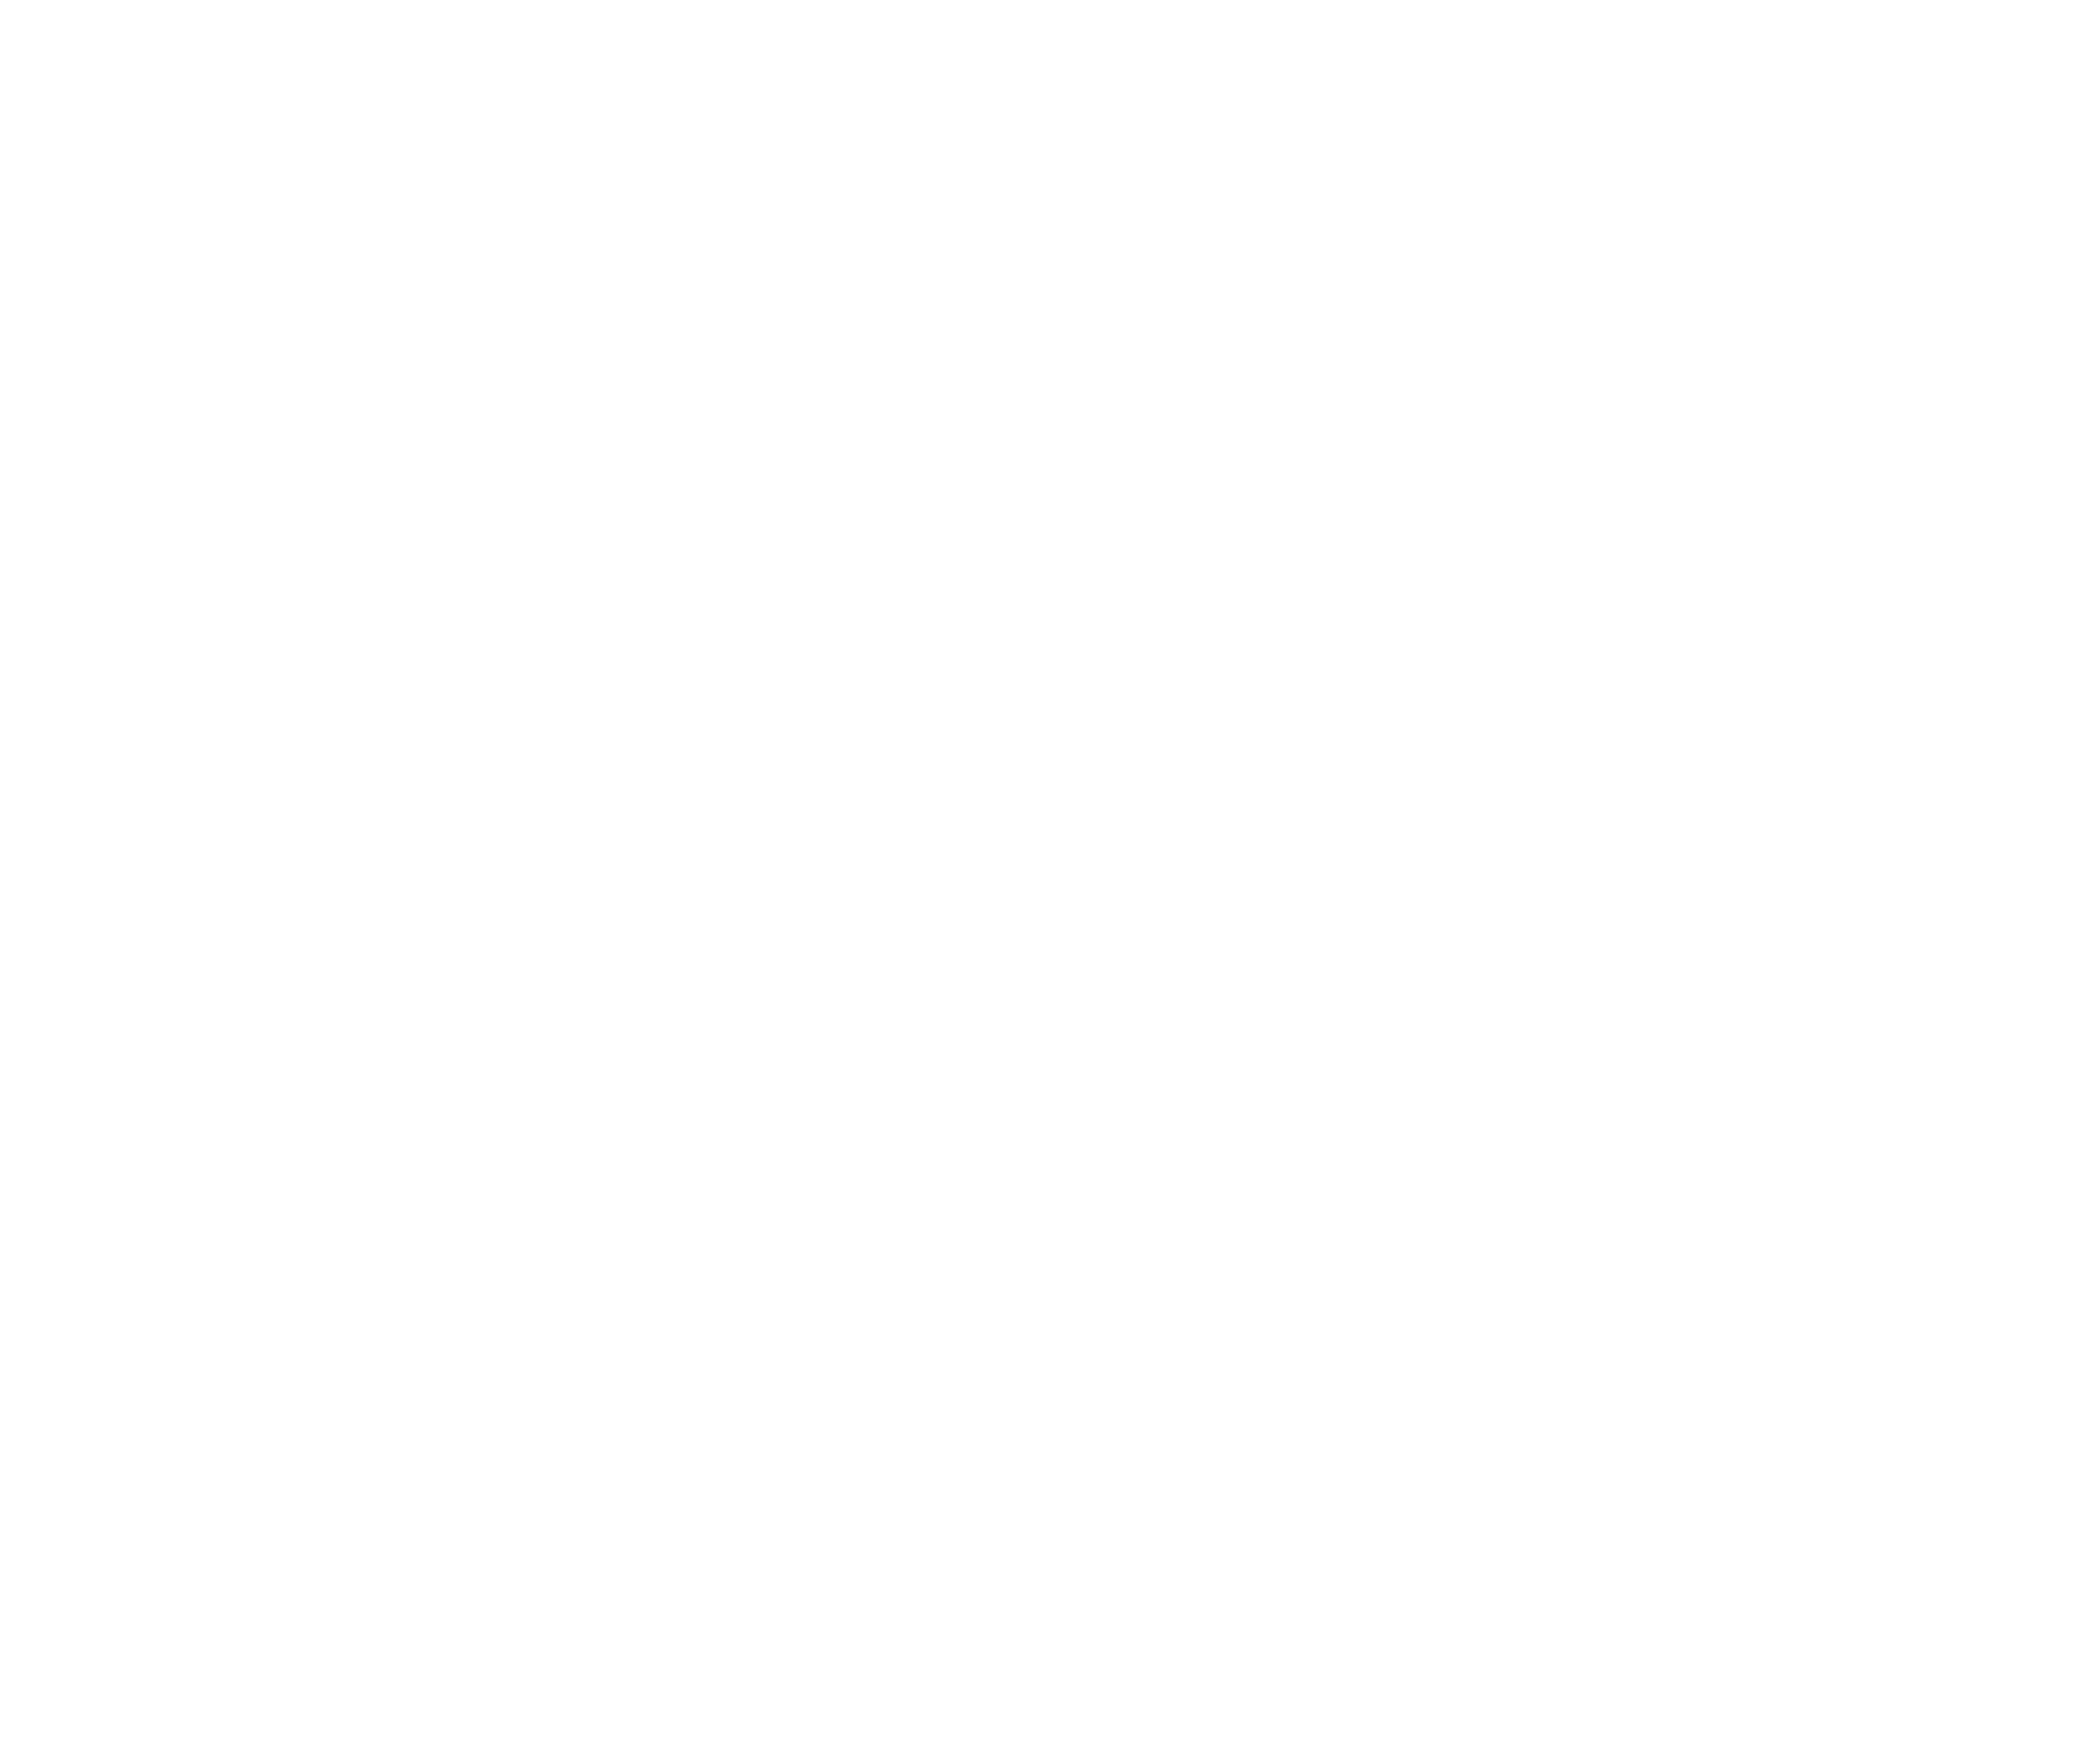 DustOfDays